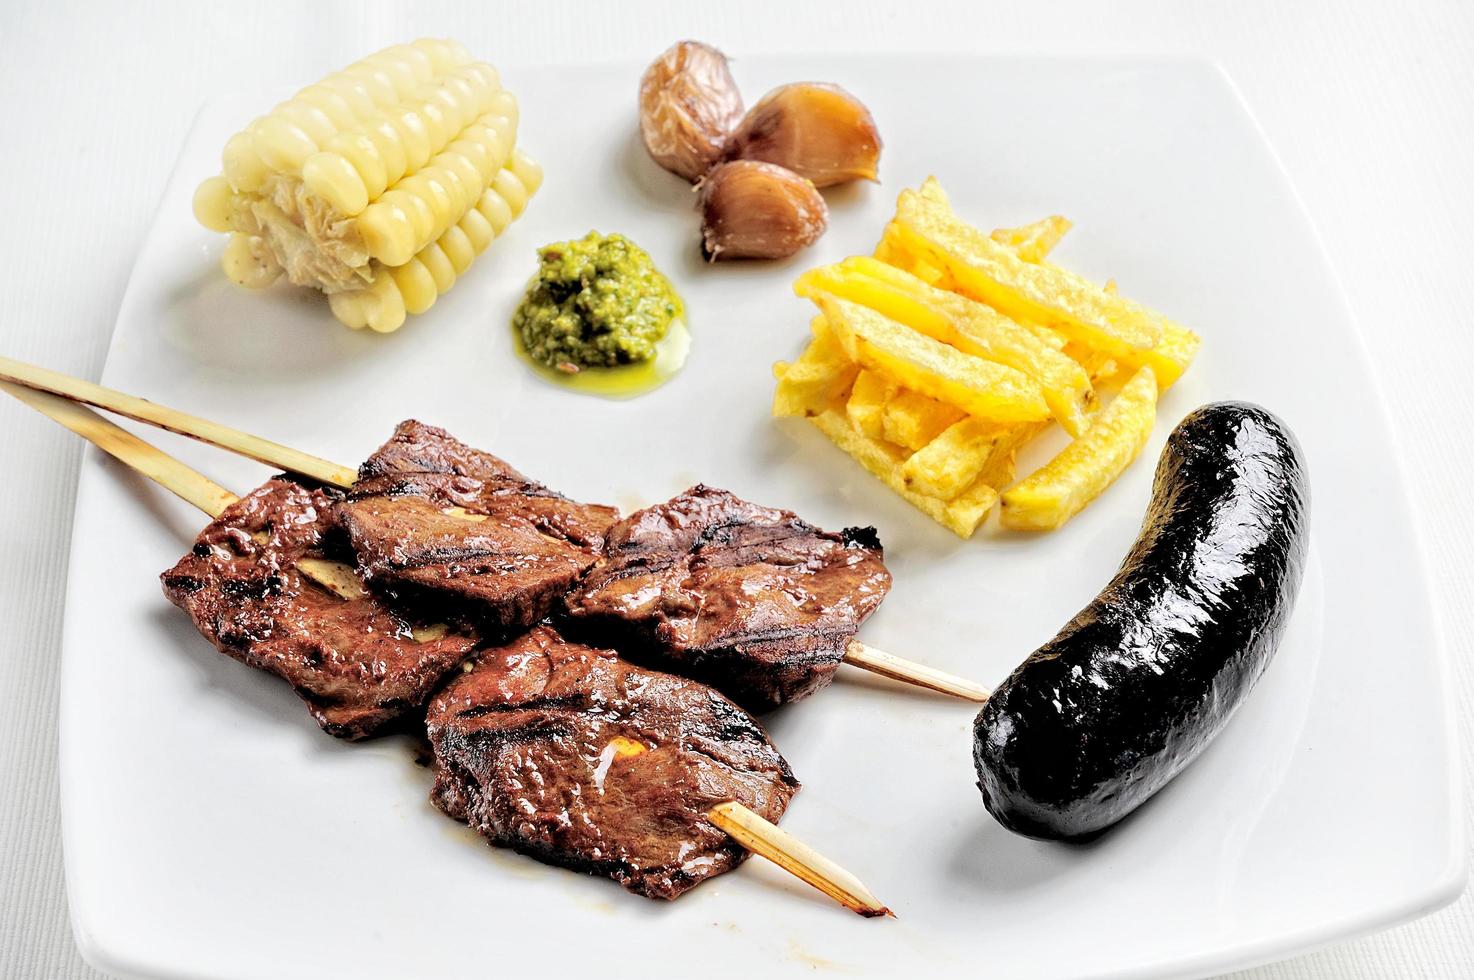 cuisine péruvienne anticuchos, brochettes de viande de coeur de boeuf grillé photo